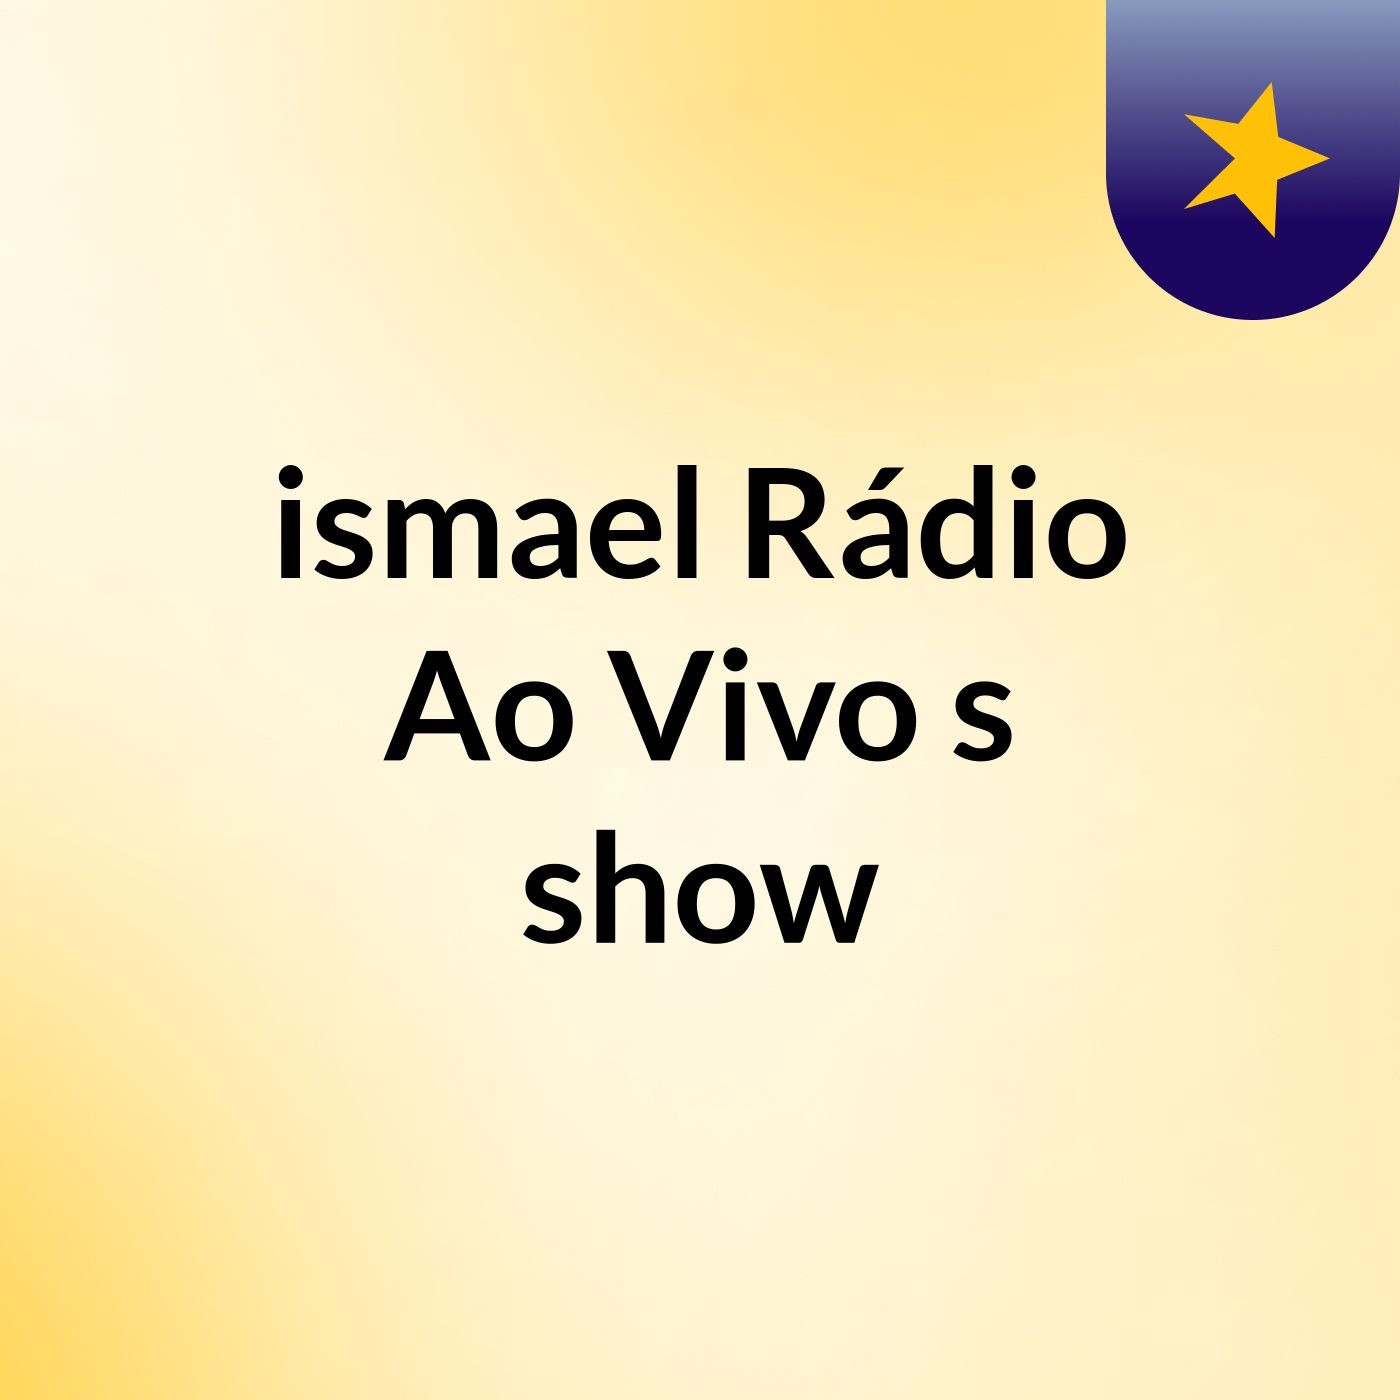 ismael Rádio Ao Vivo's show